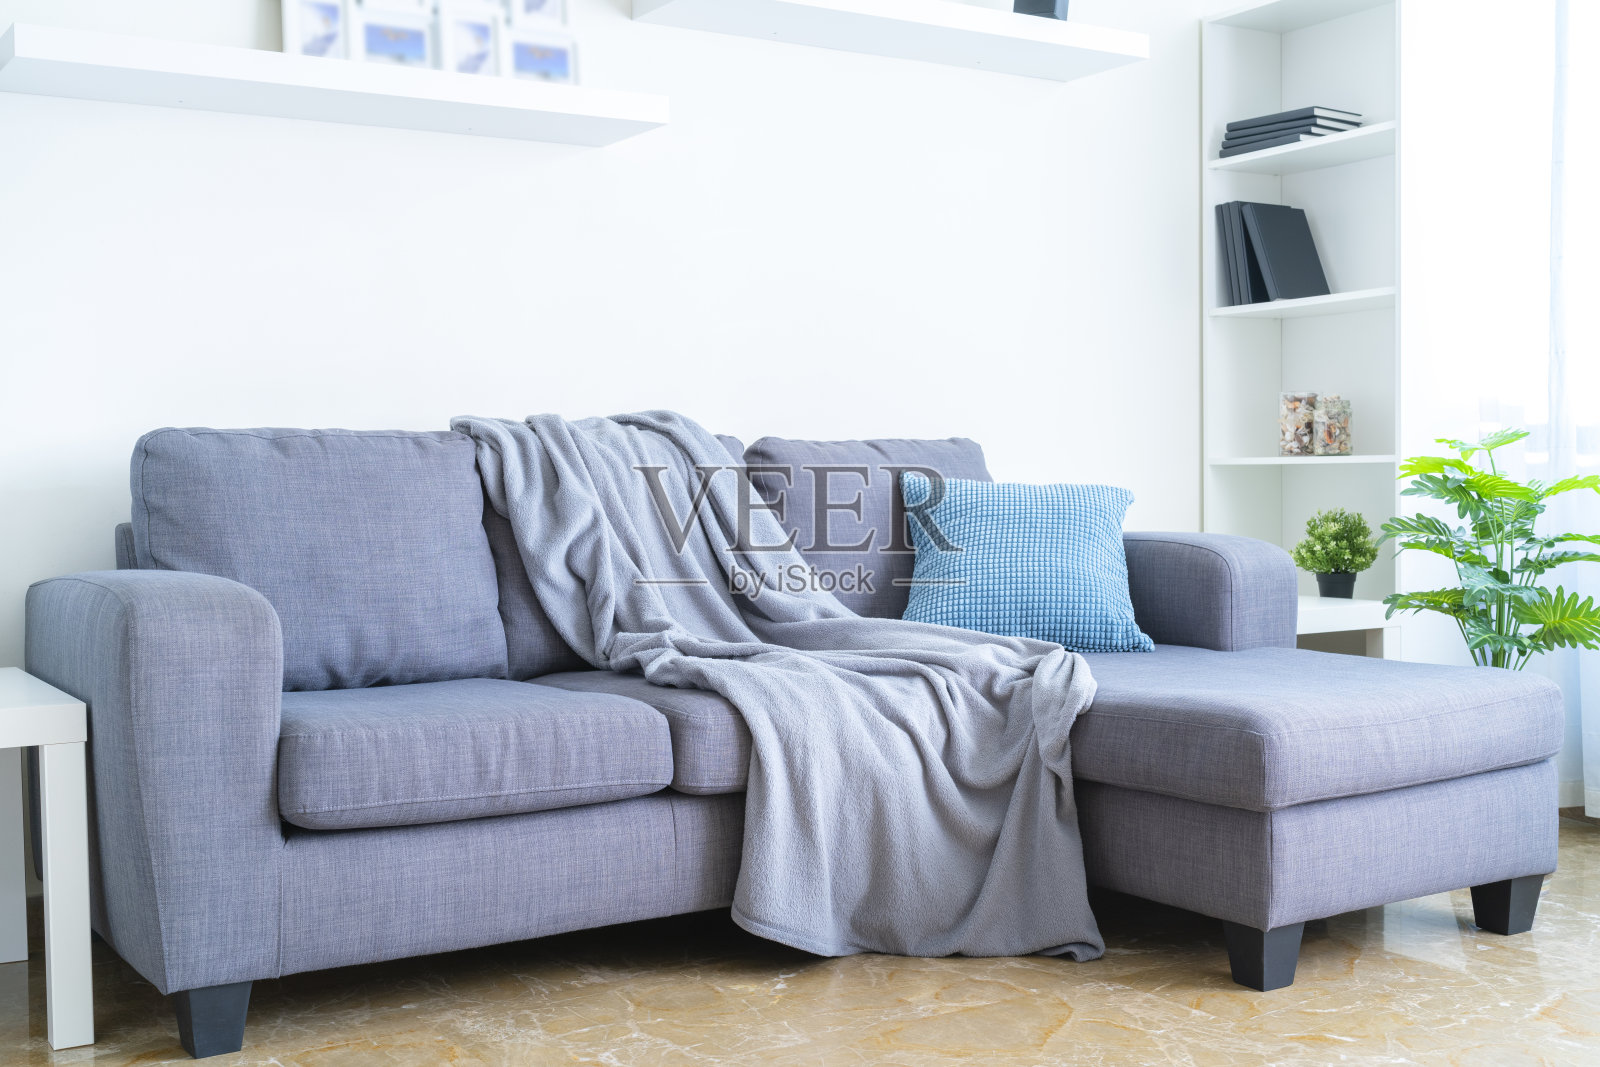 客厅内部:灰色沙发，毯子和枕头照片摄影图片